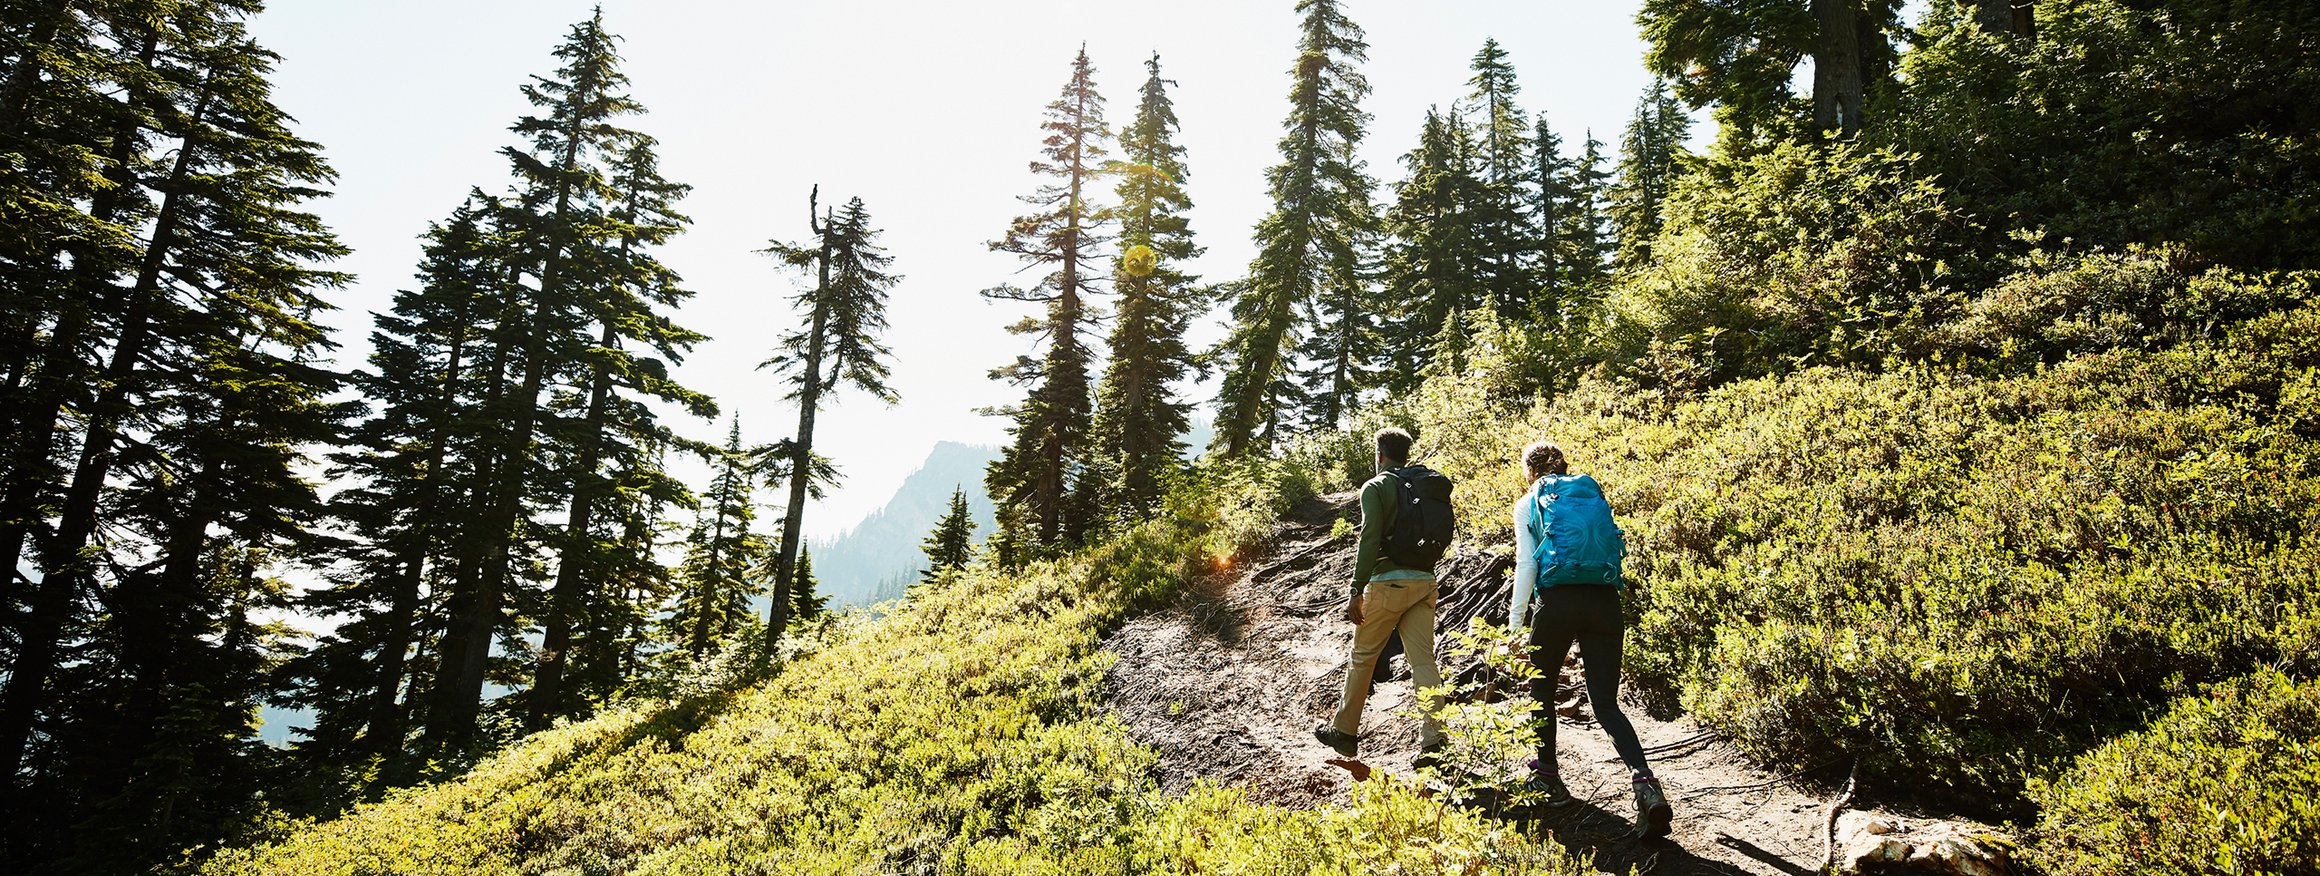 Zwei Wanderer laufen einen Weg an einem Berg hoch, umringt von Sträuchern und Nadelbäumen